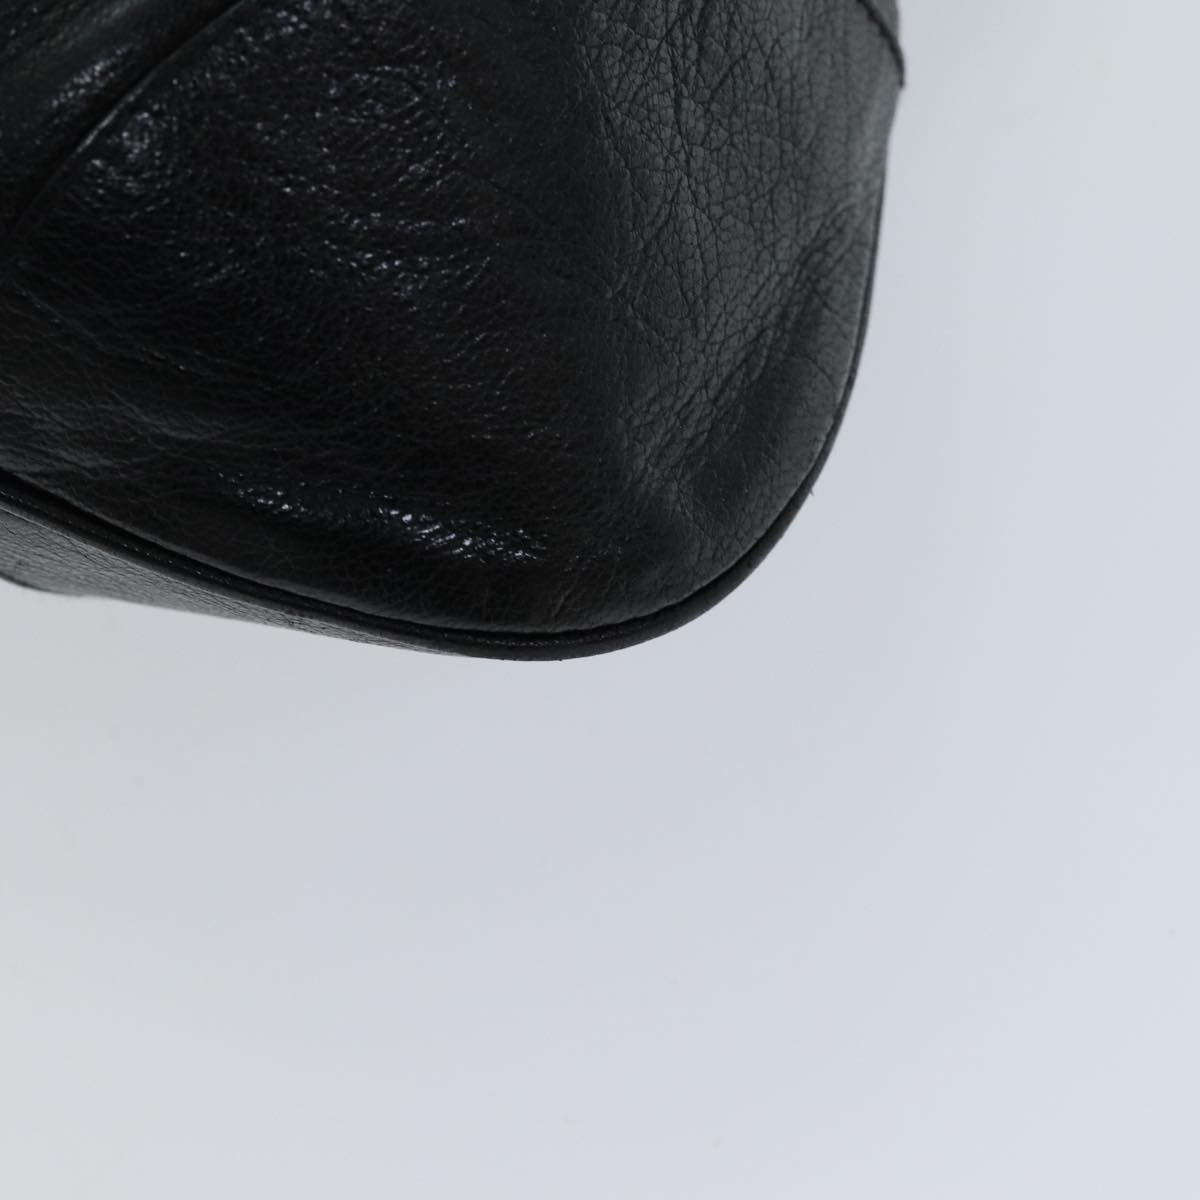 Salvatore Ferragamo Gancini Hand Bag Leather Black Auth 76486